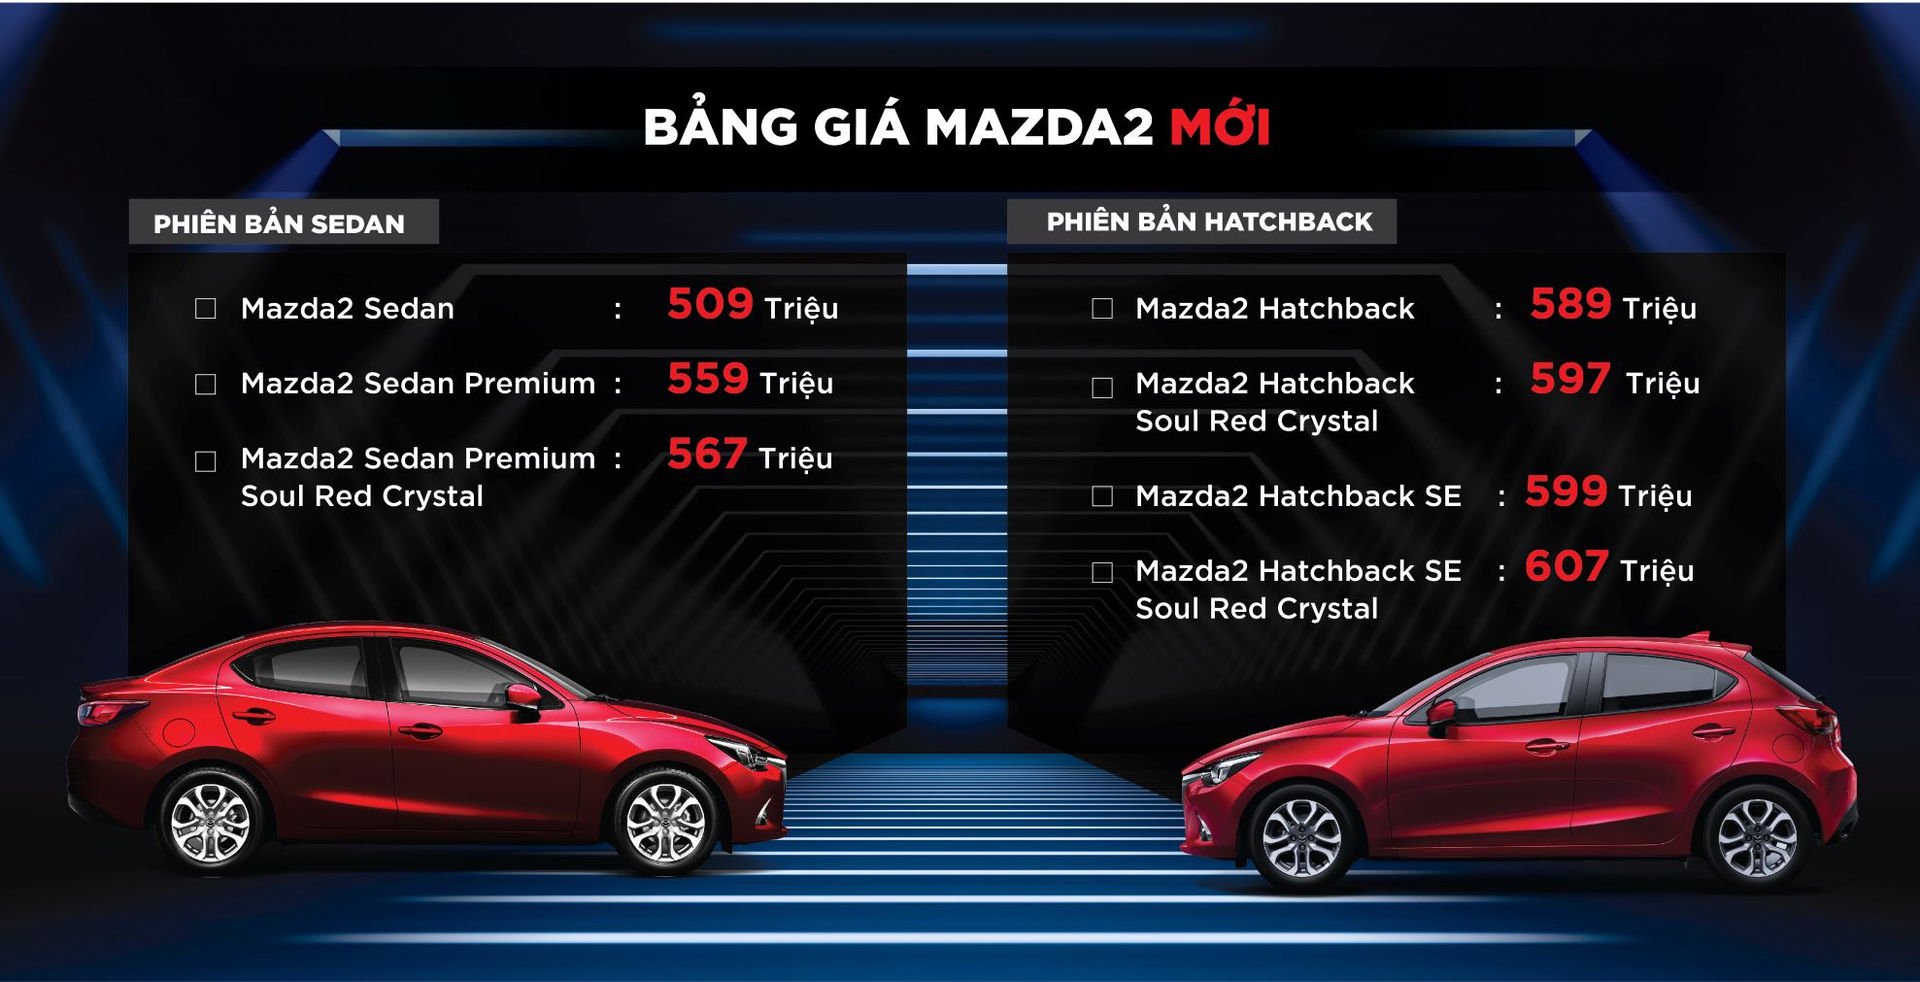 Giá bán lẻ bao gồm thuế VAT của Mazda2.